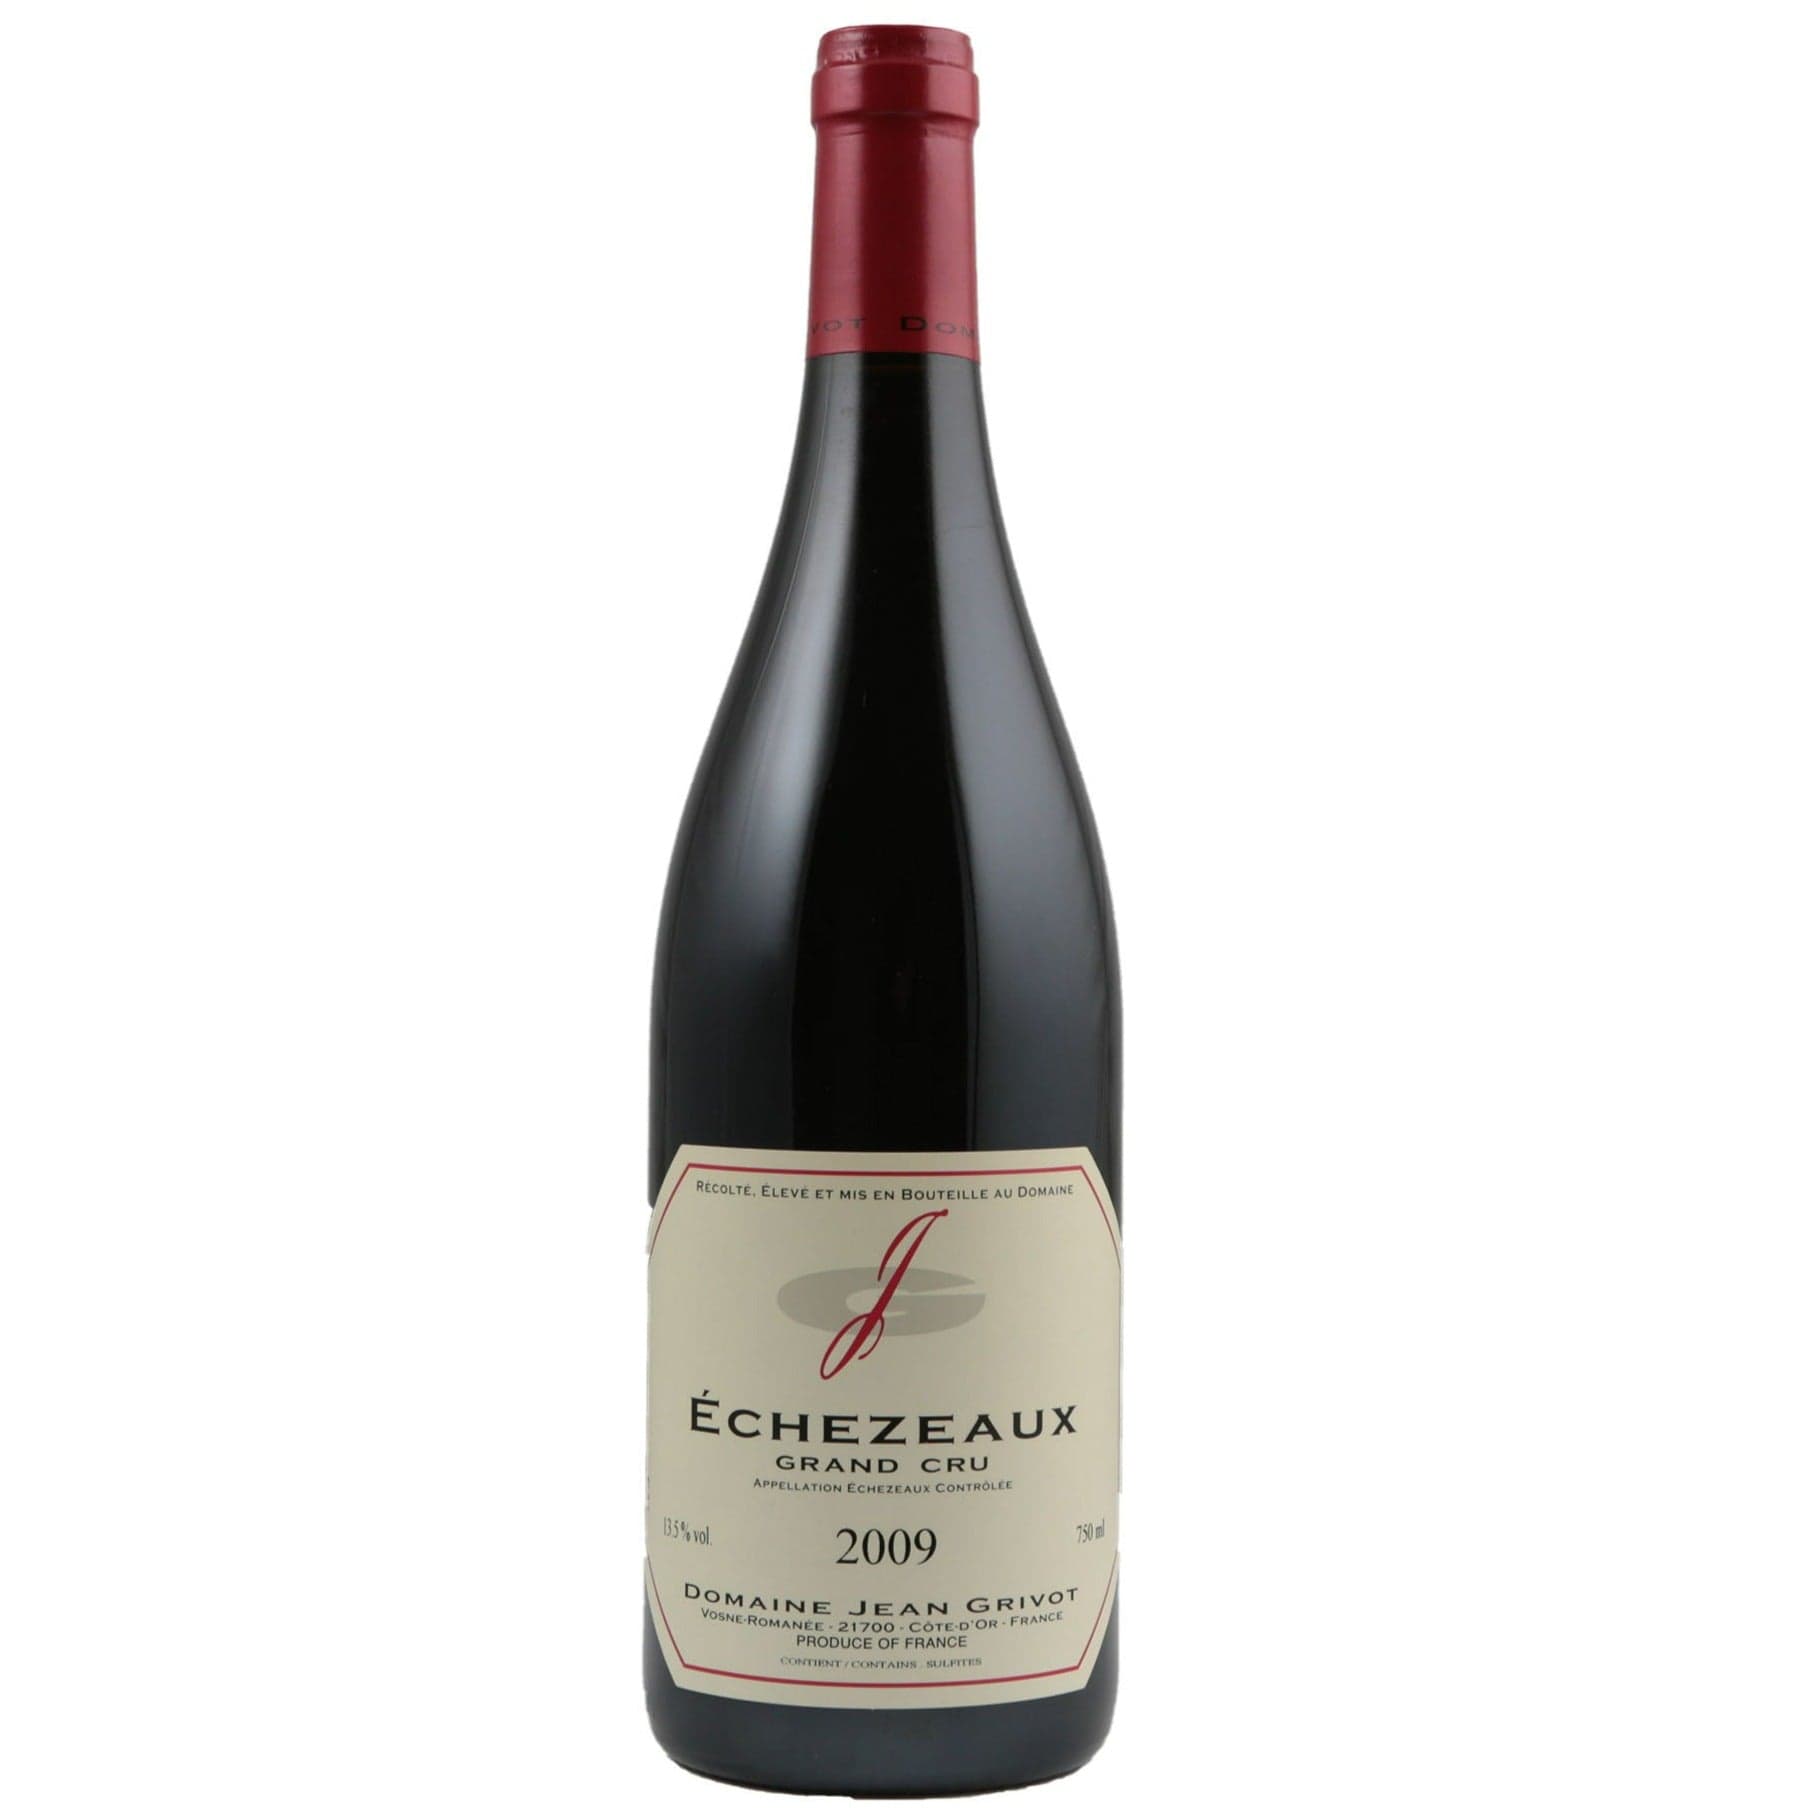 Single bottle of Red wine Dom. Jean Grivot, Echezeaux Grand Cru, Vosne-Romanee, 2009 100% Pinot Noir